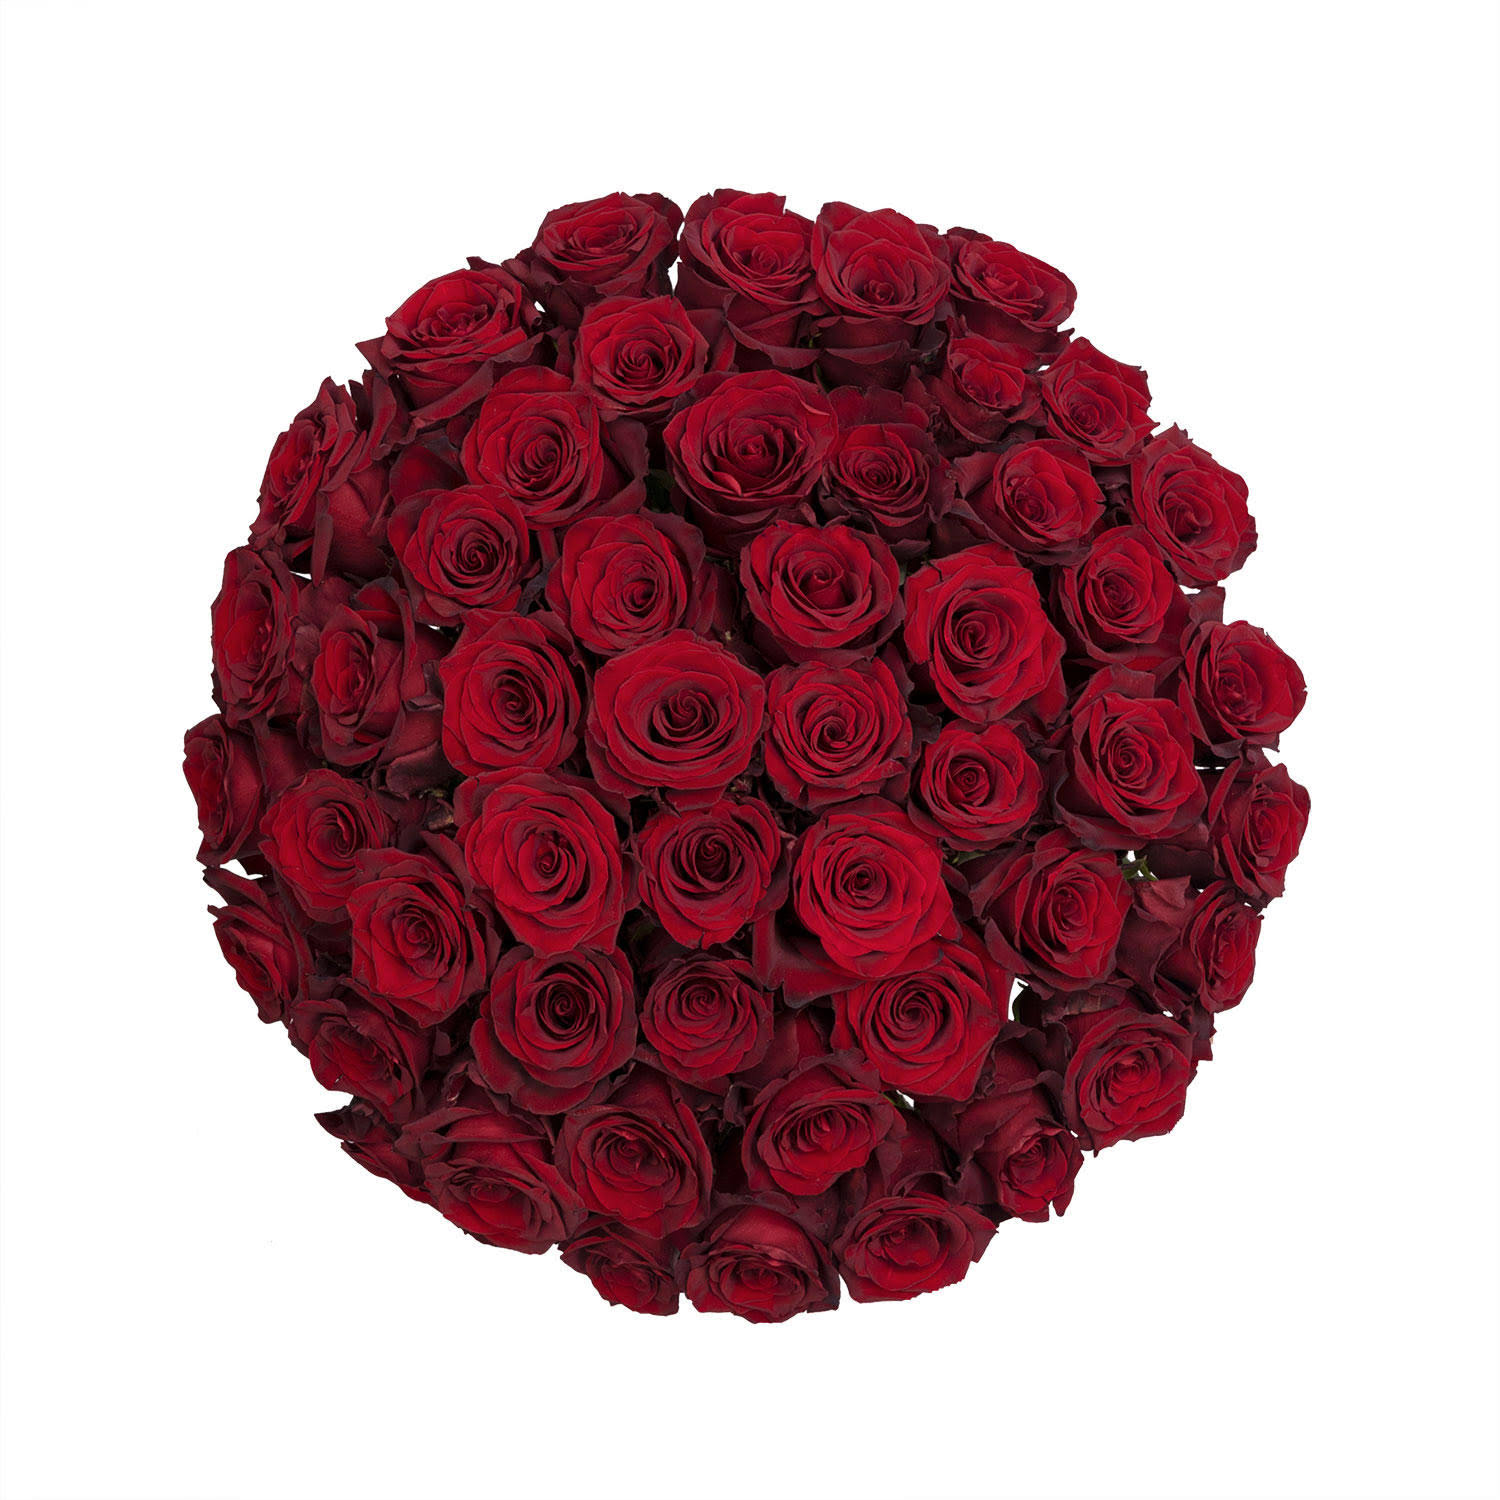 Colour Republic Premium Roses Explorer 50 Stems